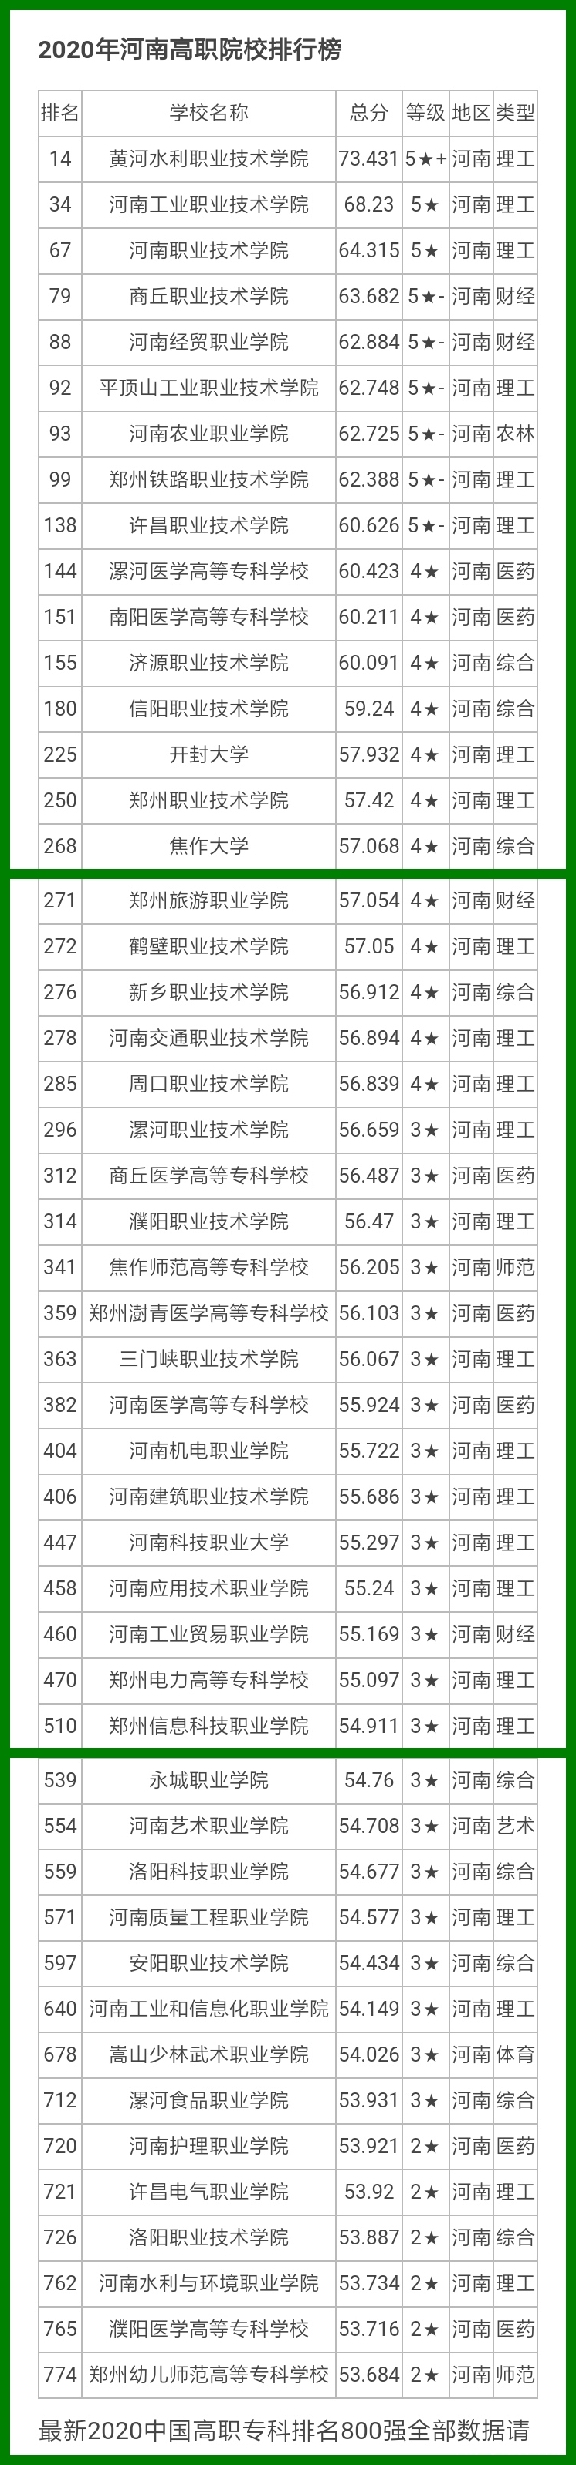 黄河水利职业技术学院在高职院校中可排河南省榜首，全国第14名